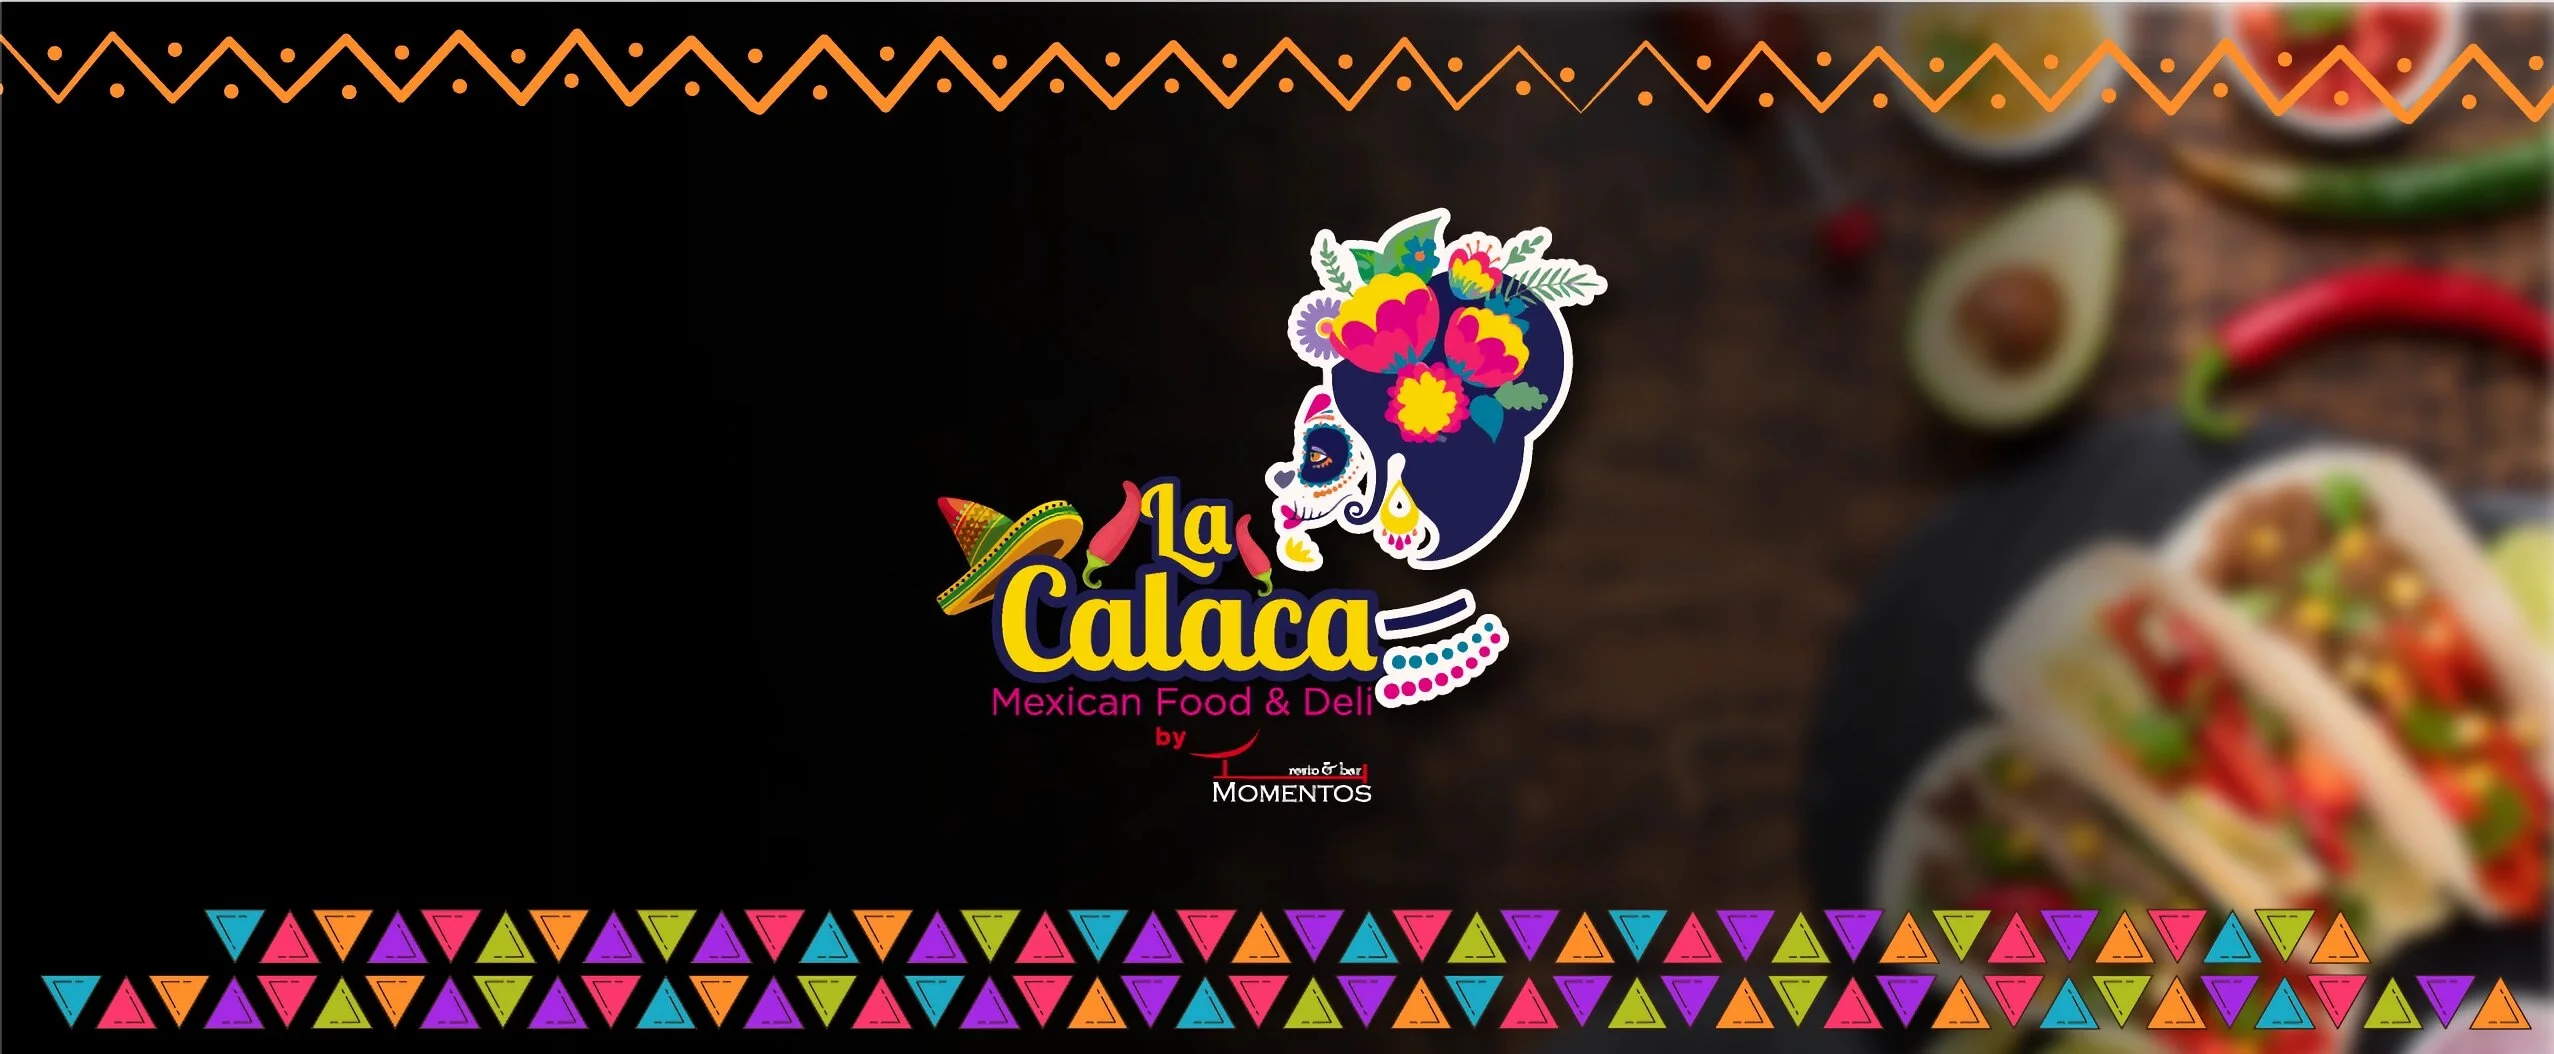 La Calaca by Momentos-5074